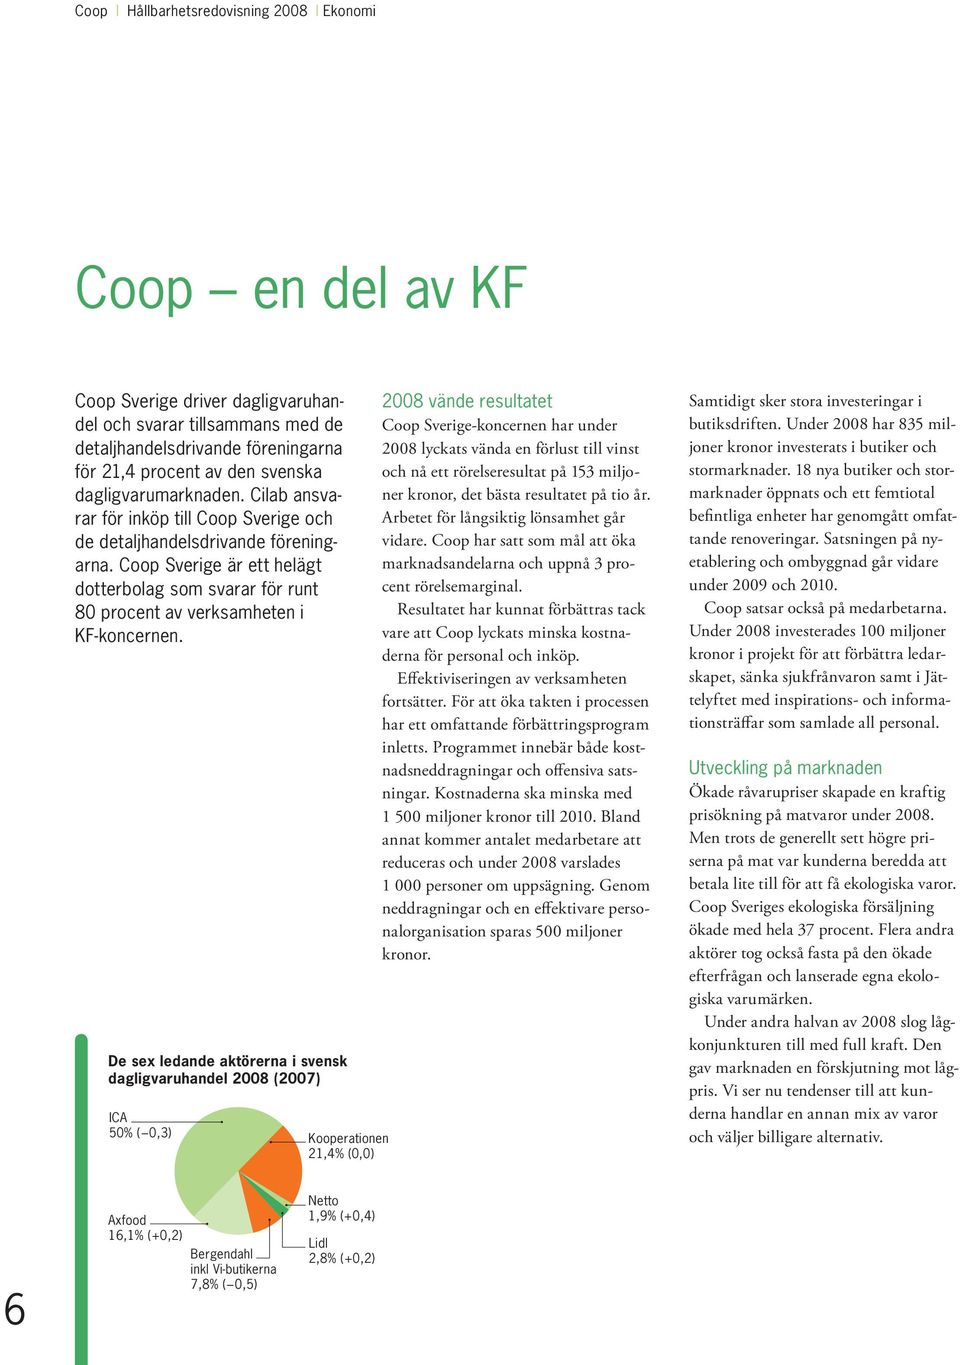 Coop Sverige är ett helägt dotterbolag som svarar för runt 80 procent av verksamheten i KF-koncernen.